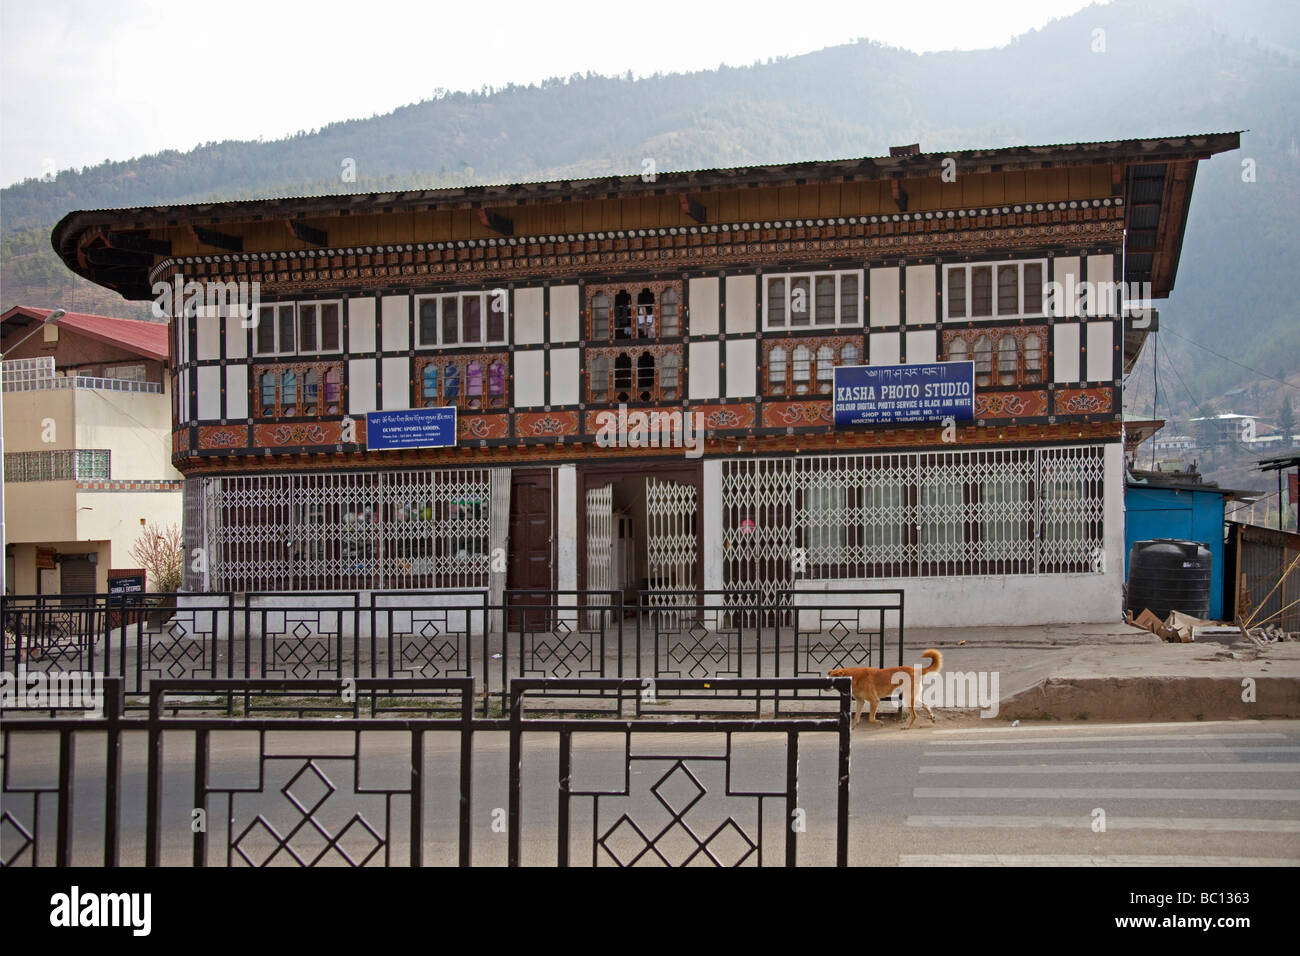 Maison typique bâtiment officiel à Thimphu, Bhoutan Asie 91351 Bhutan-Thimphu Banque D'Images